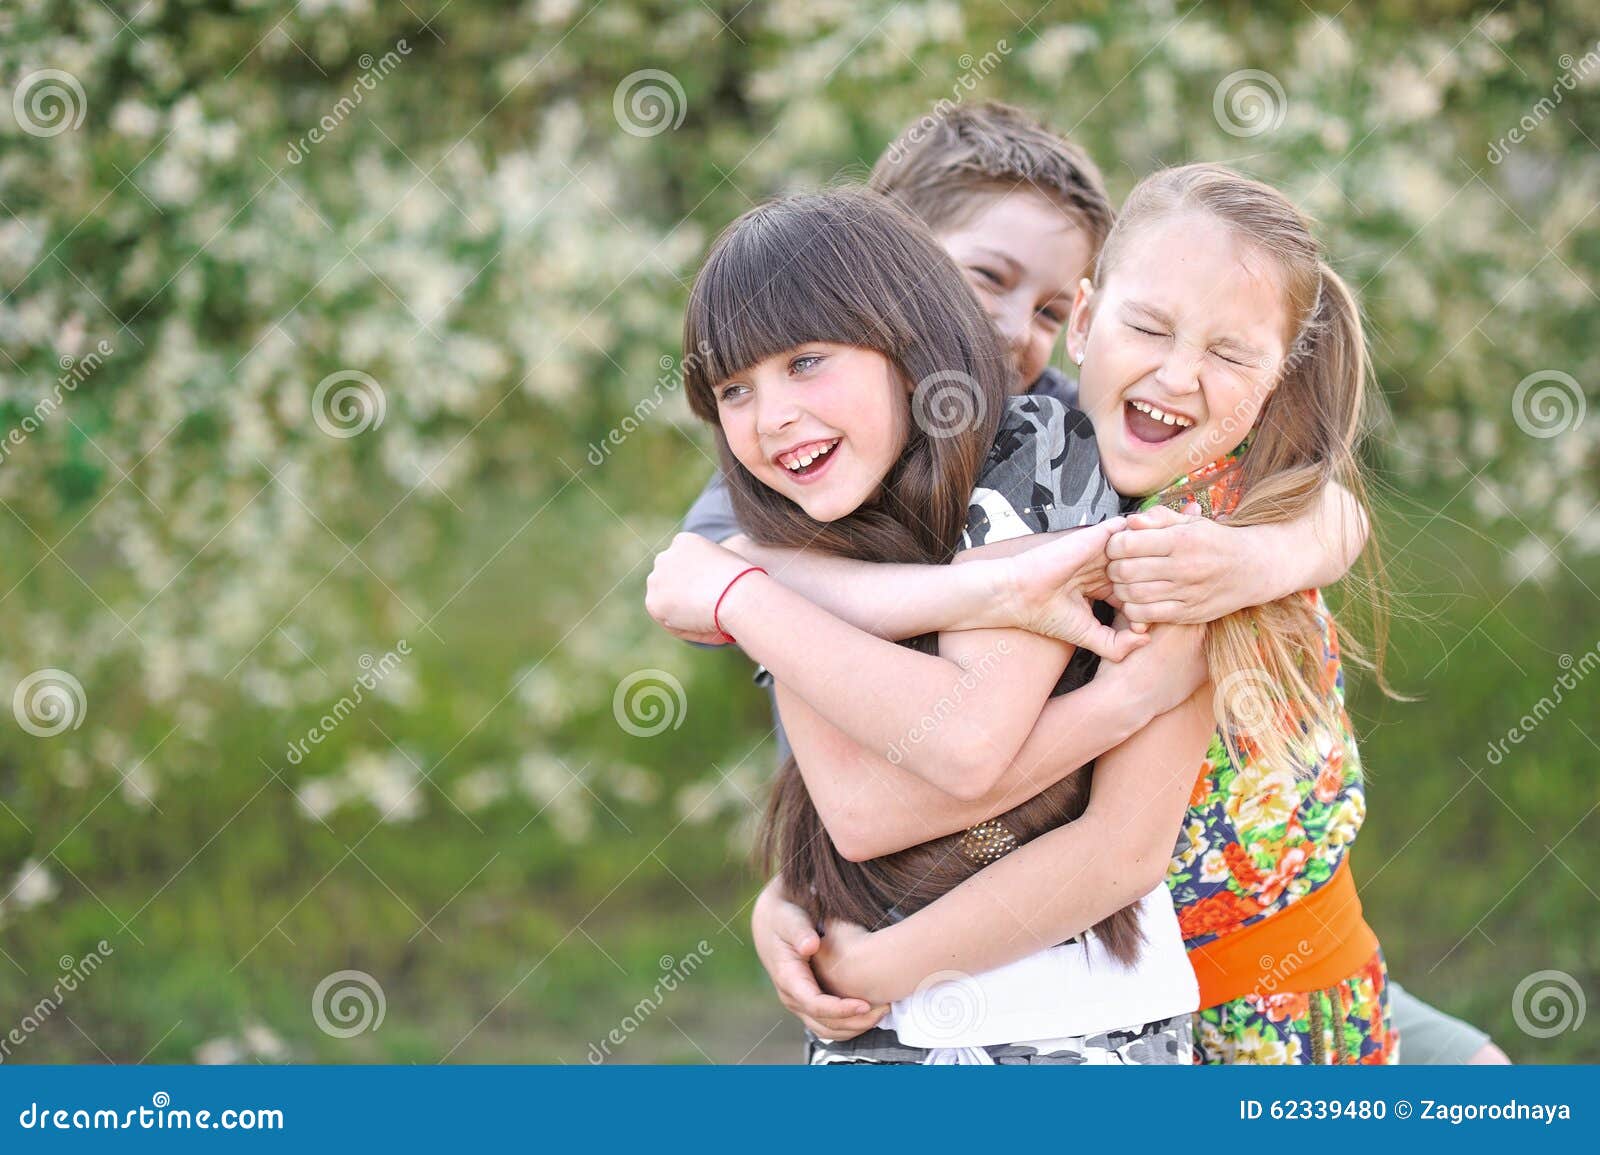 三个小孩背景图片-三个小孩背景素材下载-觅知网